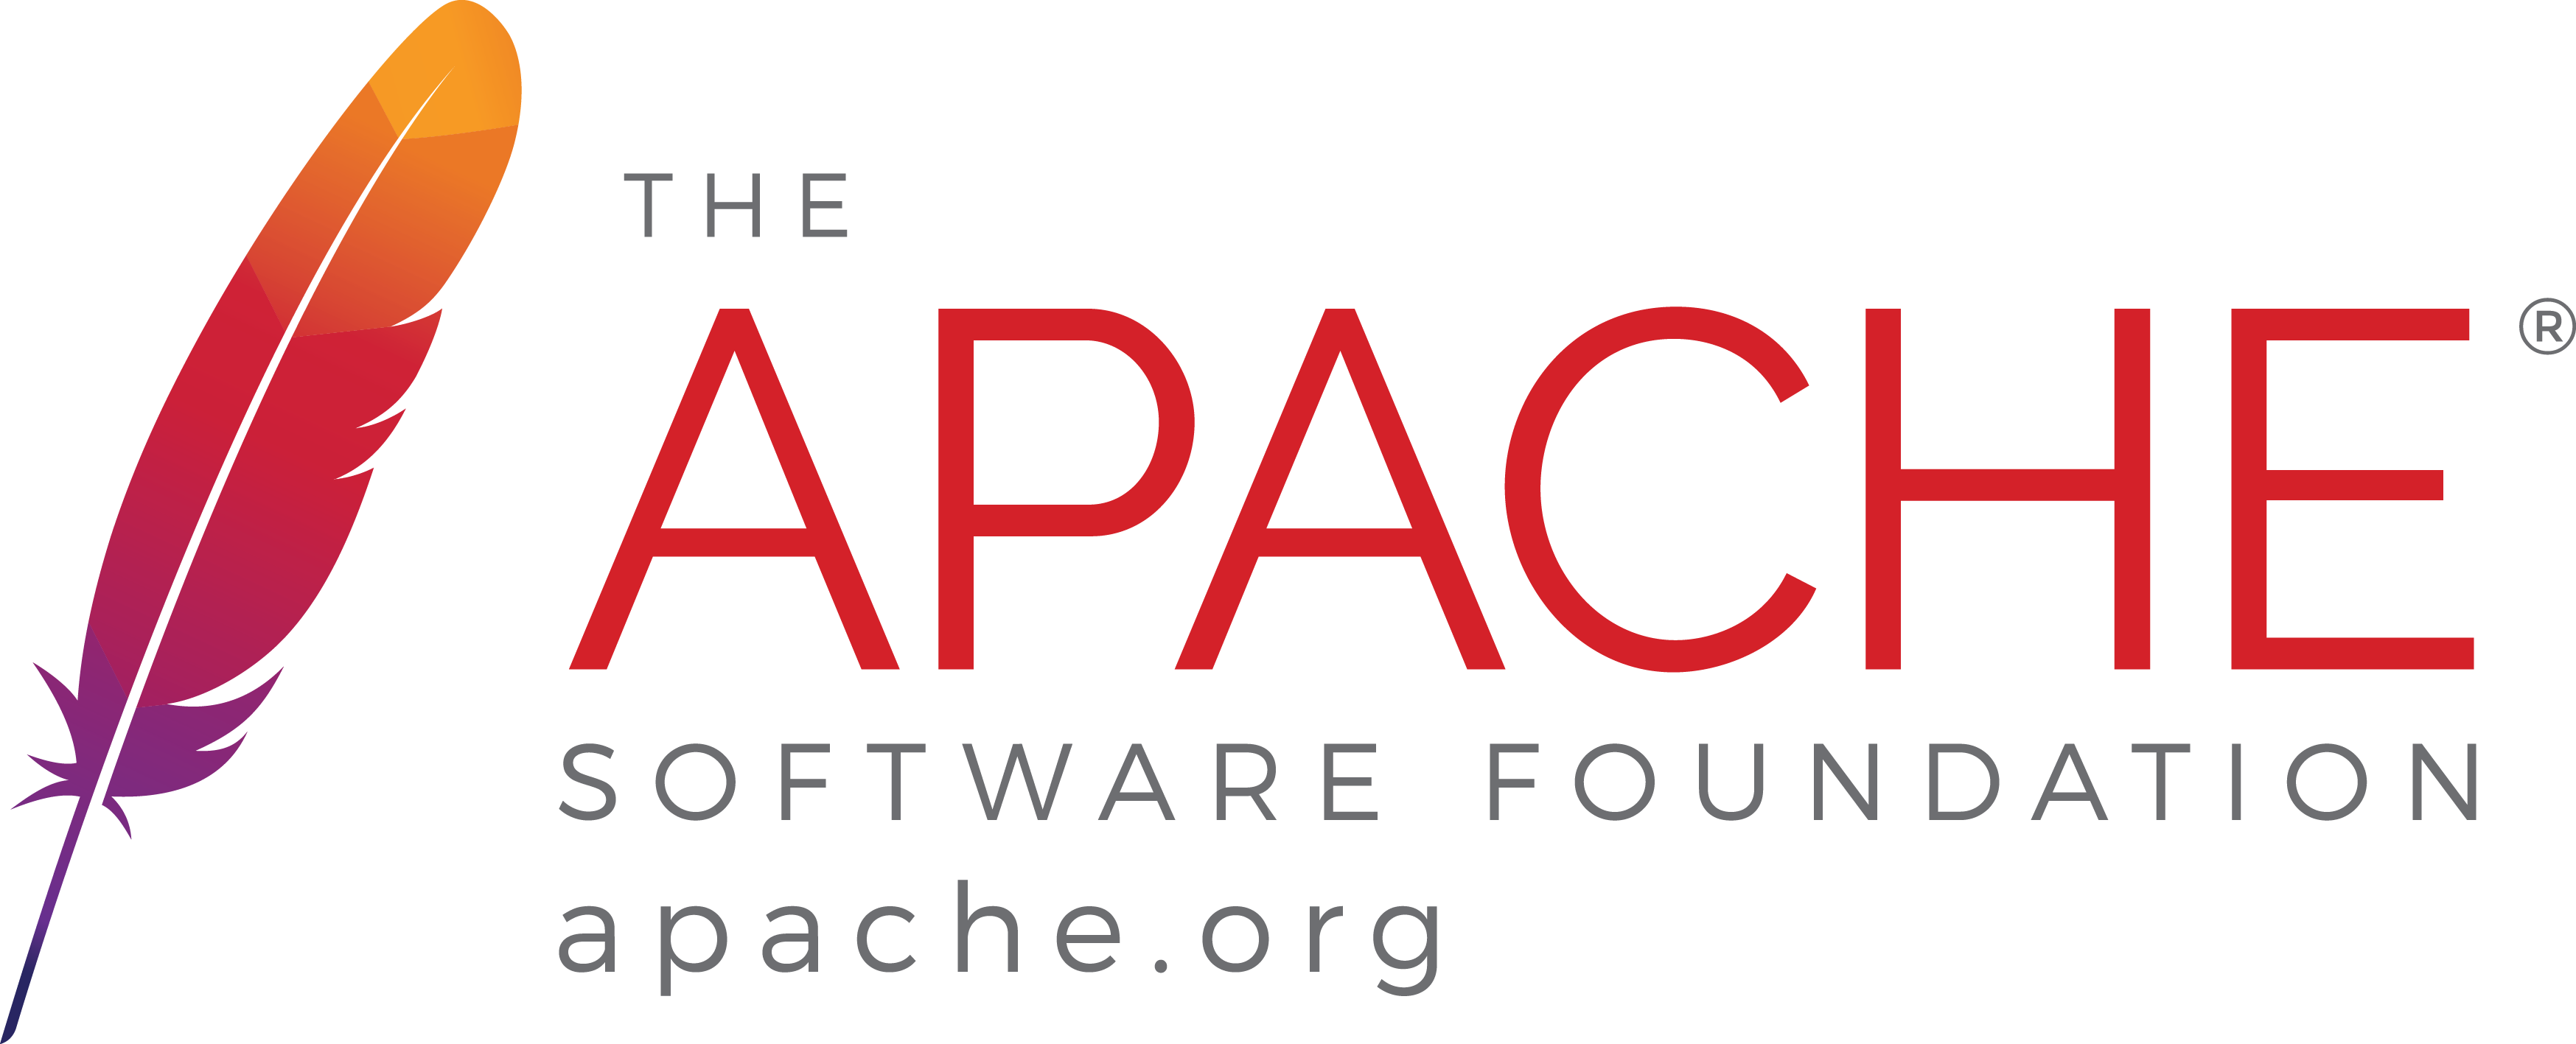 Apache Software Foundation - Apache Server (3495x1417)